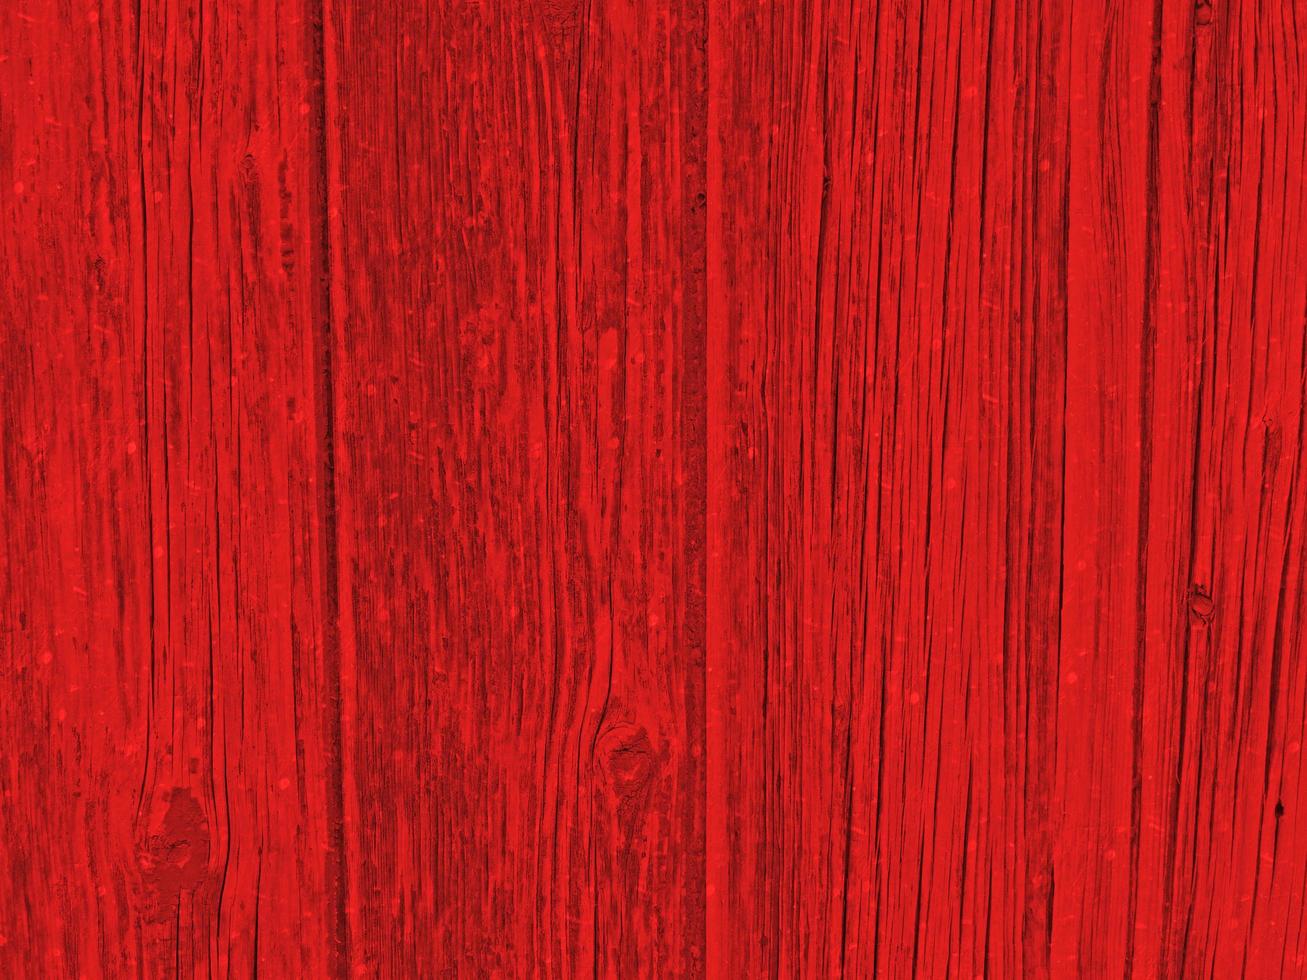 Gỗ đỏ là một vật liệu hiếm có giá trị và độc đáo. Gỗ đỏ là lựa chọn tuyệt vời để bổ sung vào nội thất của bạn, tạo ra sự ấn tượng và sự sang trọng. Hãy trải nghiệm sự trôi chảy mềm mại của nó khi sử dụng tấm gỗ đỏ để cải thiện nội thất chung của bạn.